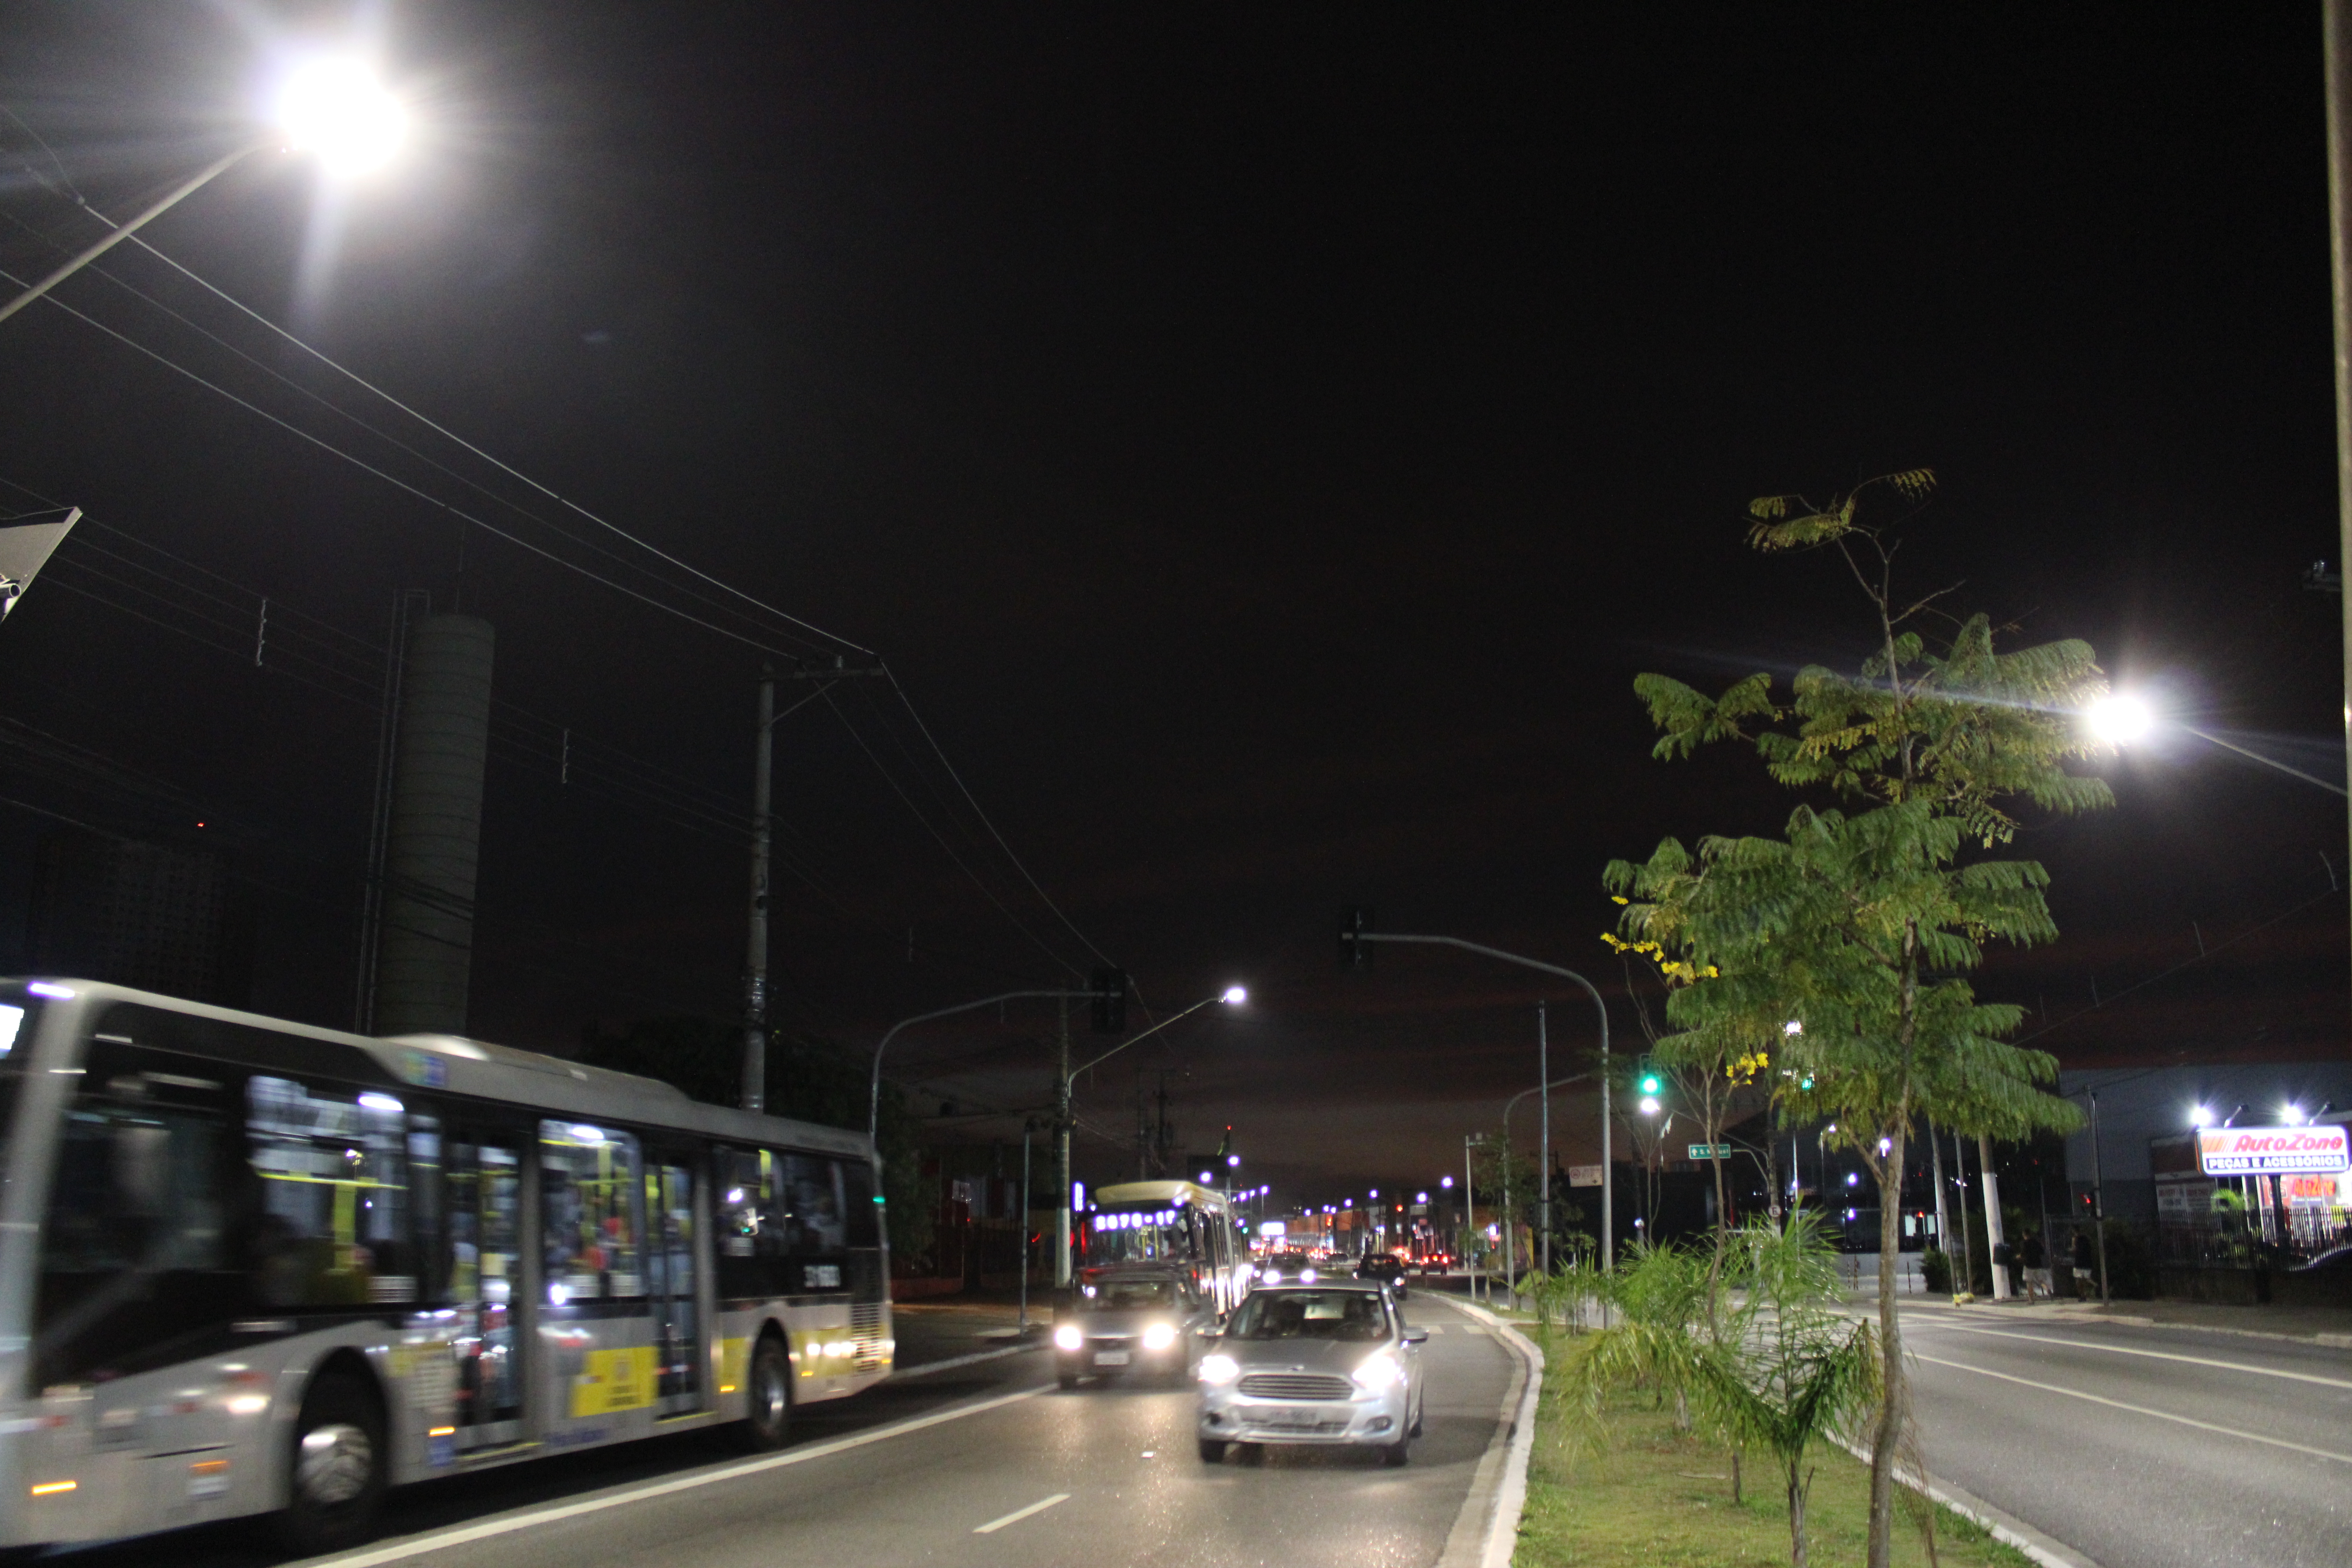 Foto tirada durante a noite na Avenida Marechal Tito que mostra a nova iluminação no local